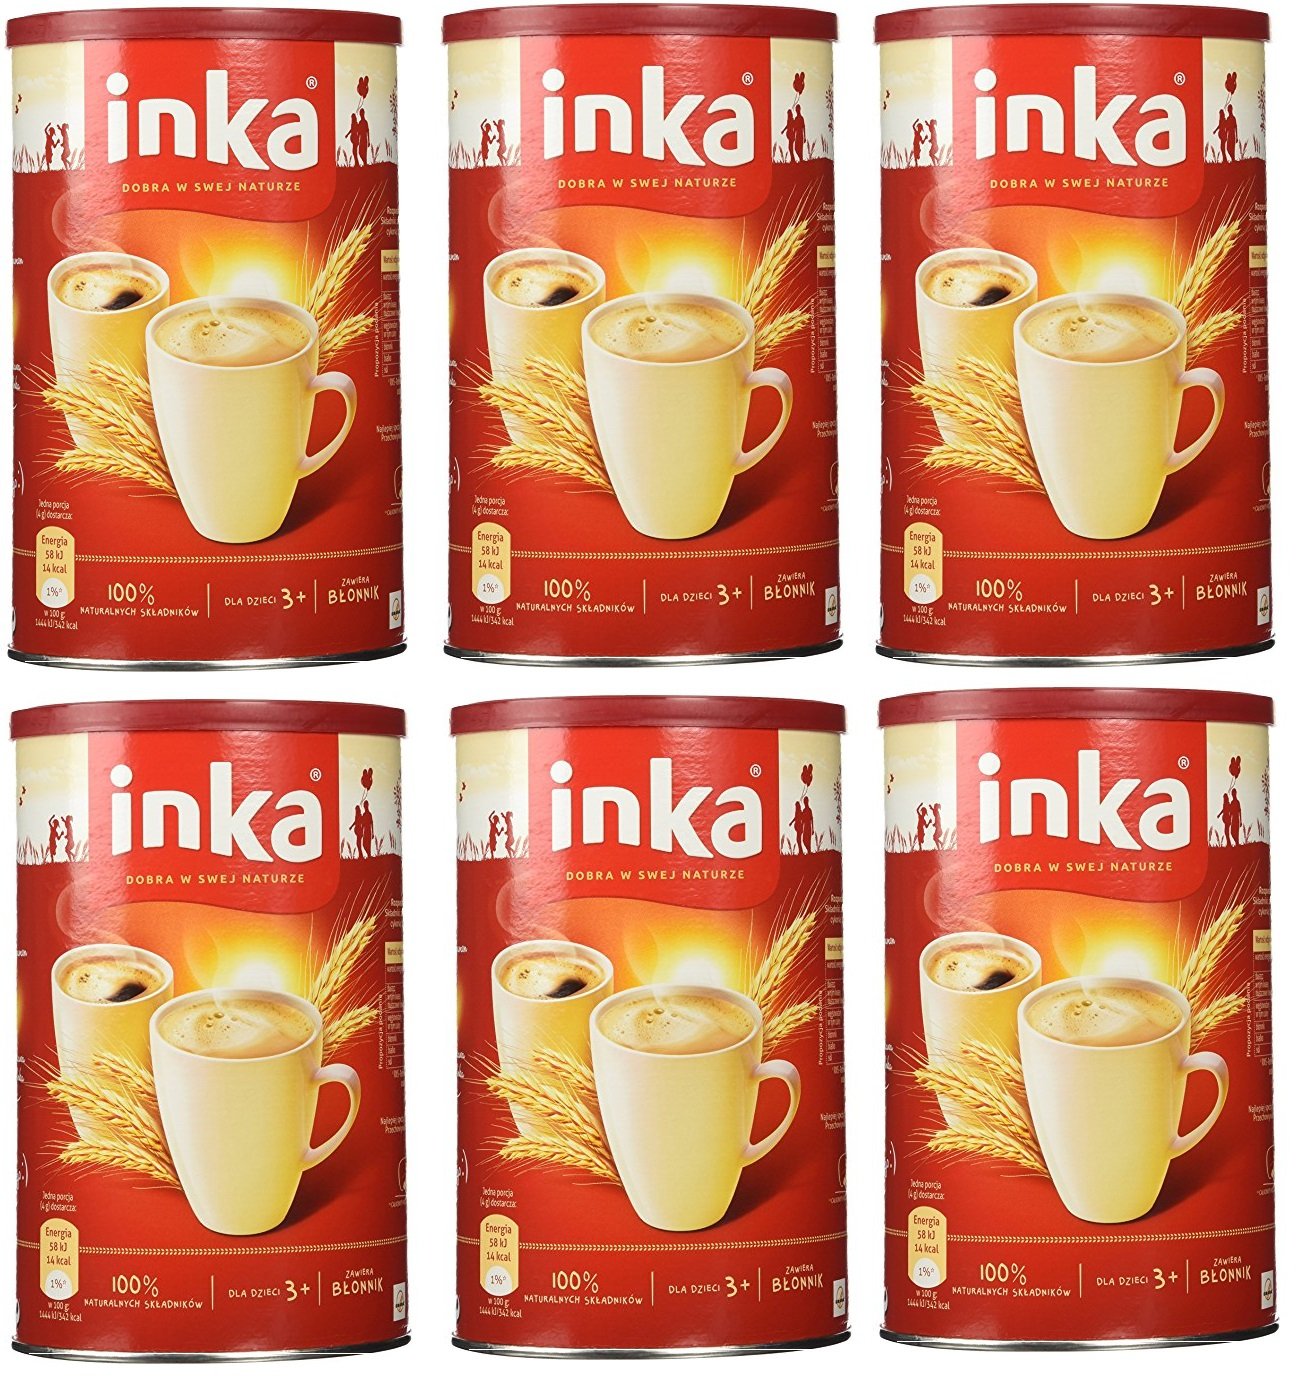 INKA Roasted Grain Coffee Kawa Zbozowa Pack of 6 - 200 Gram Cans